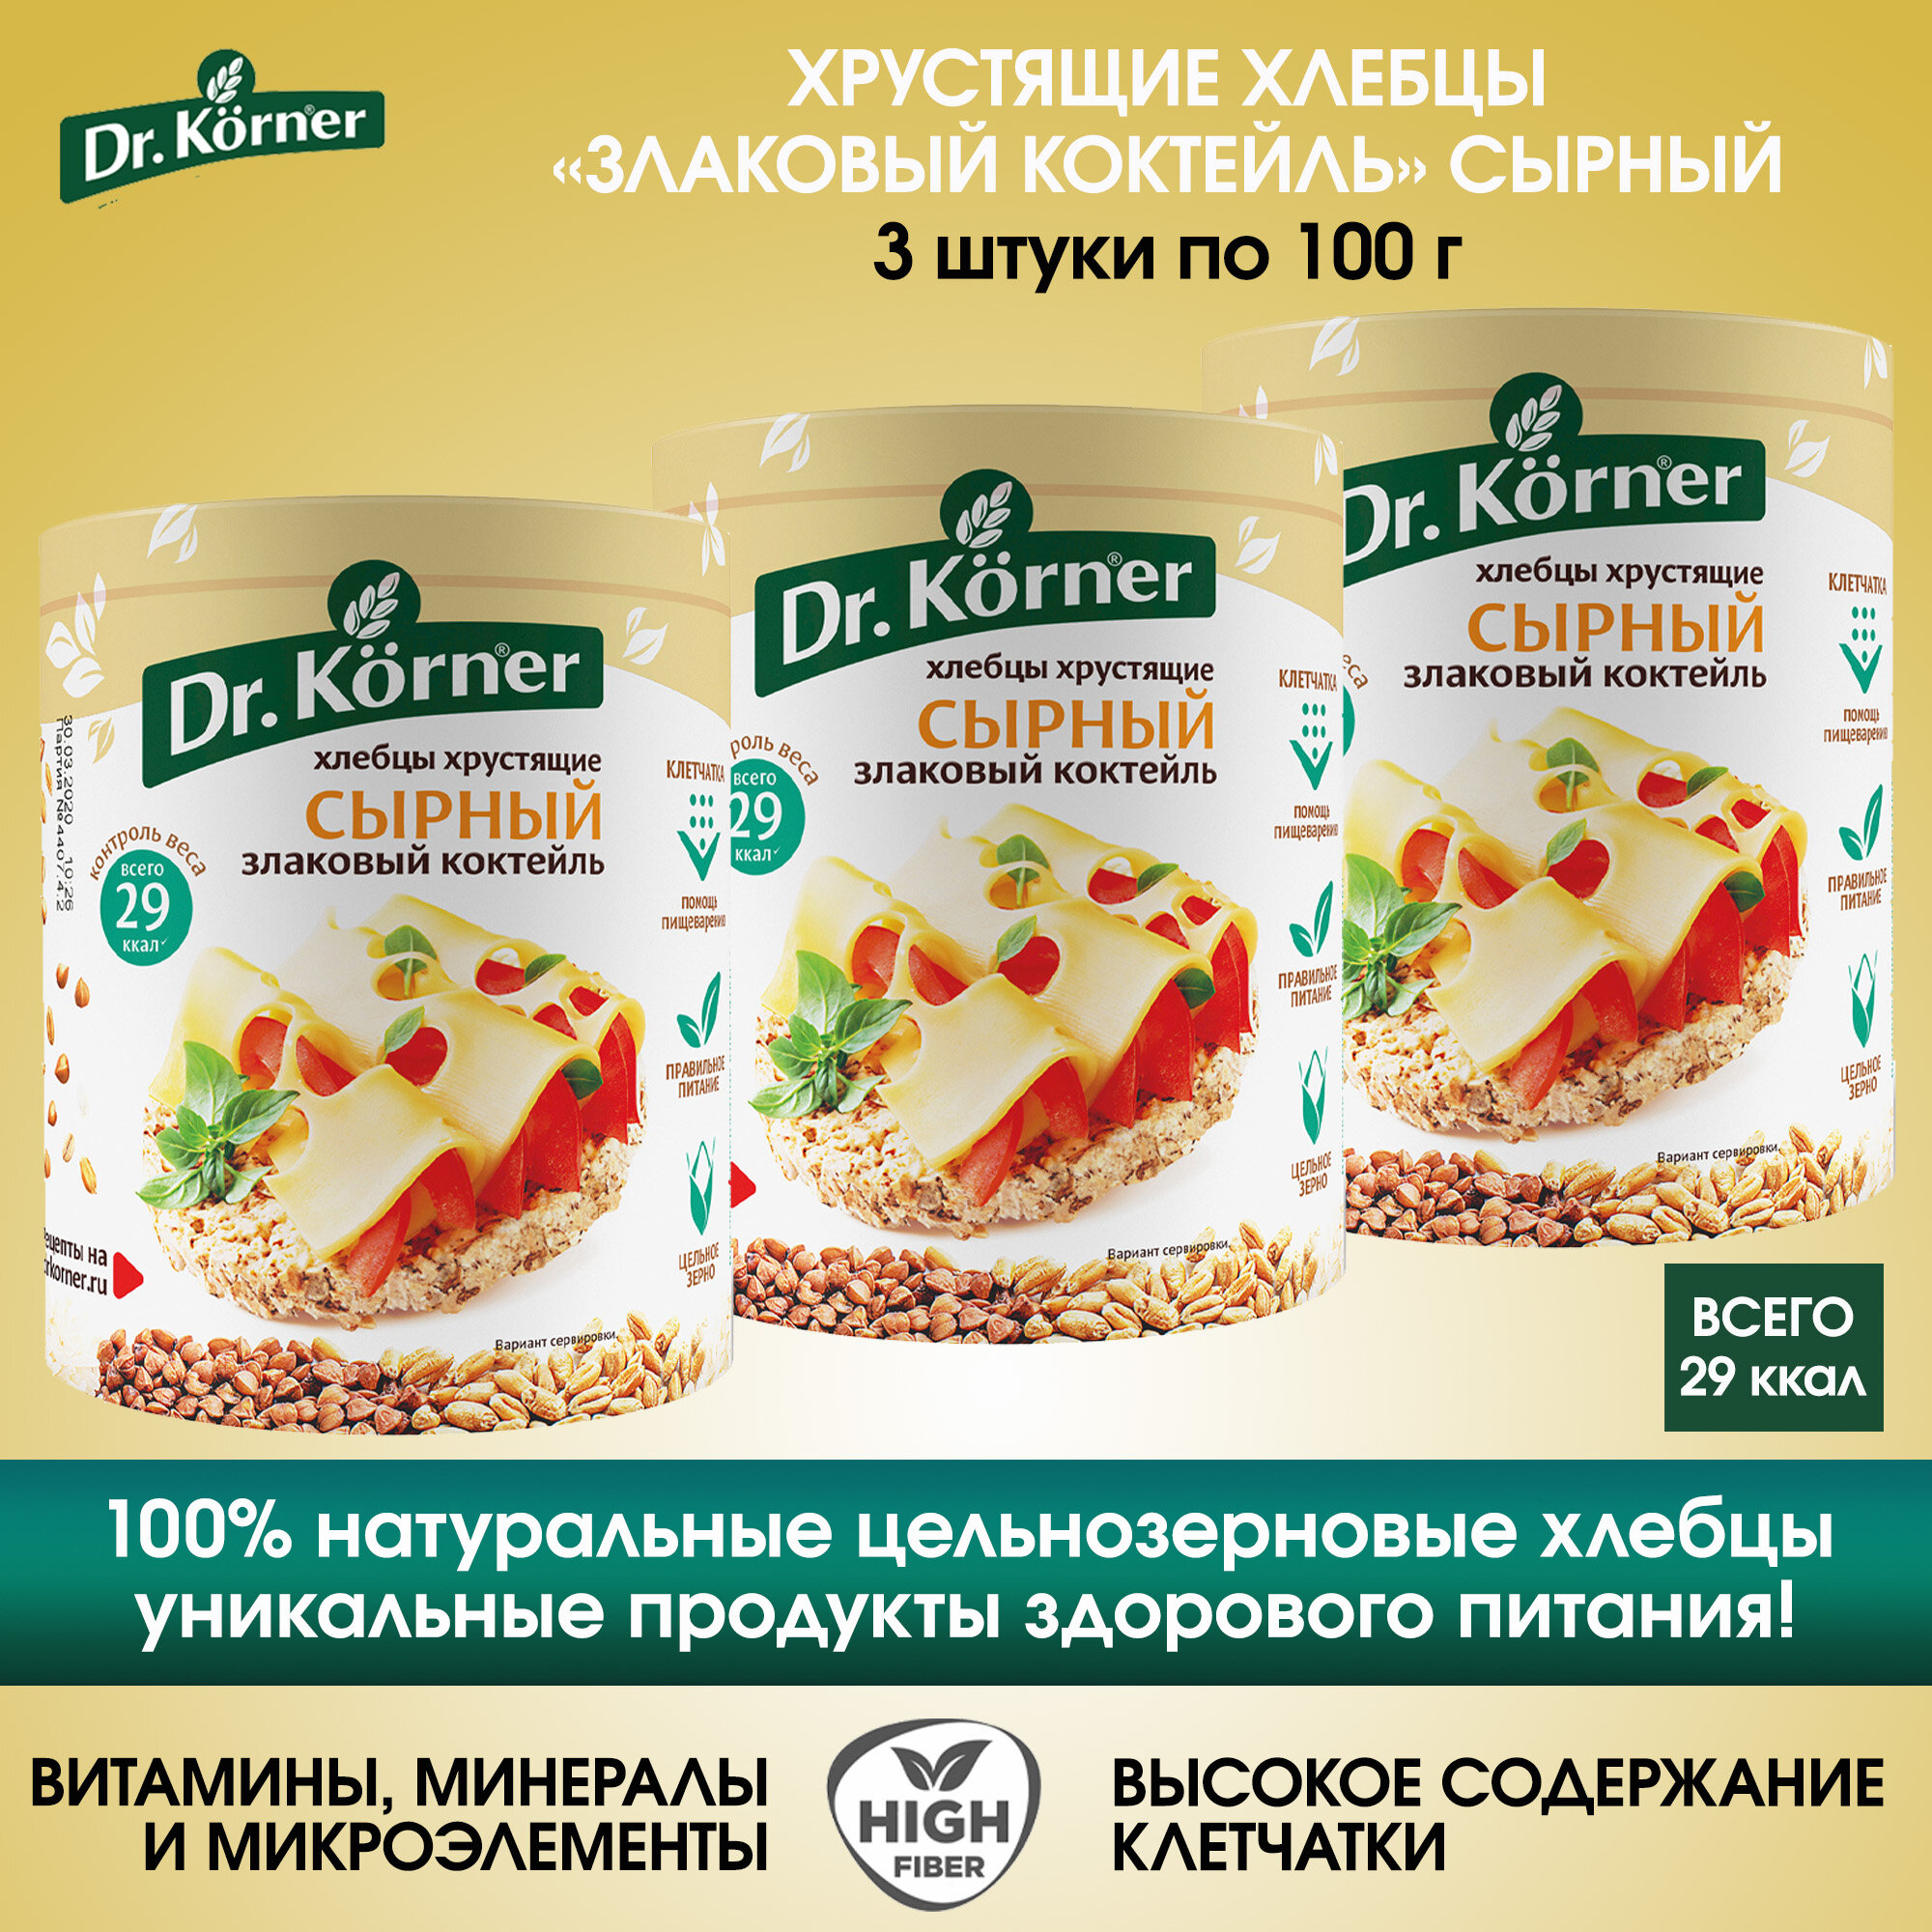 Хлебцы Dr.Korner злаковый коктейль Сырный, 3 упаковки по 100г. — купить в интернет-магазине по низкой цене на Яндекс Маркете